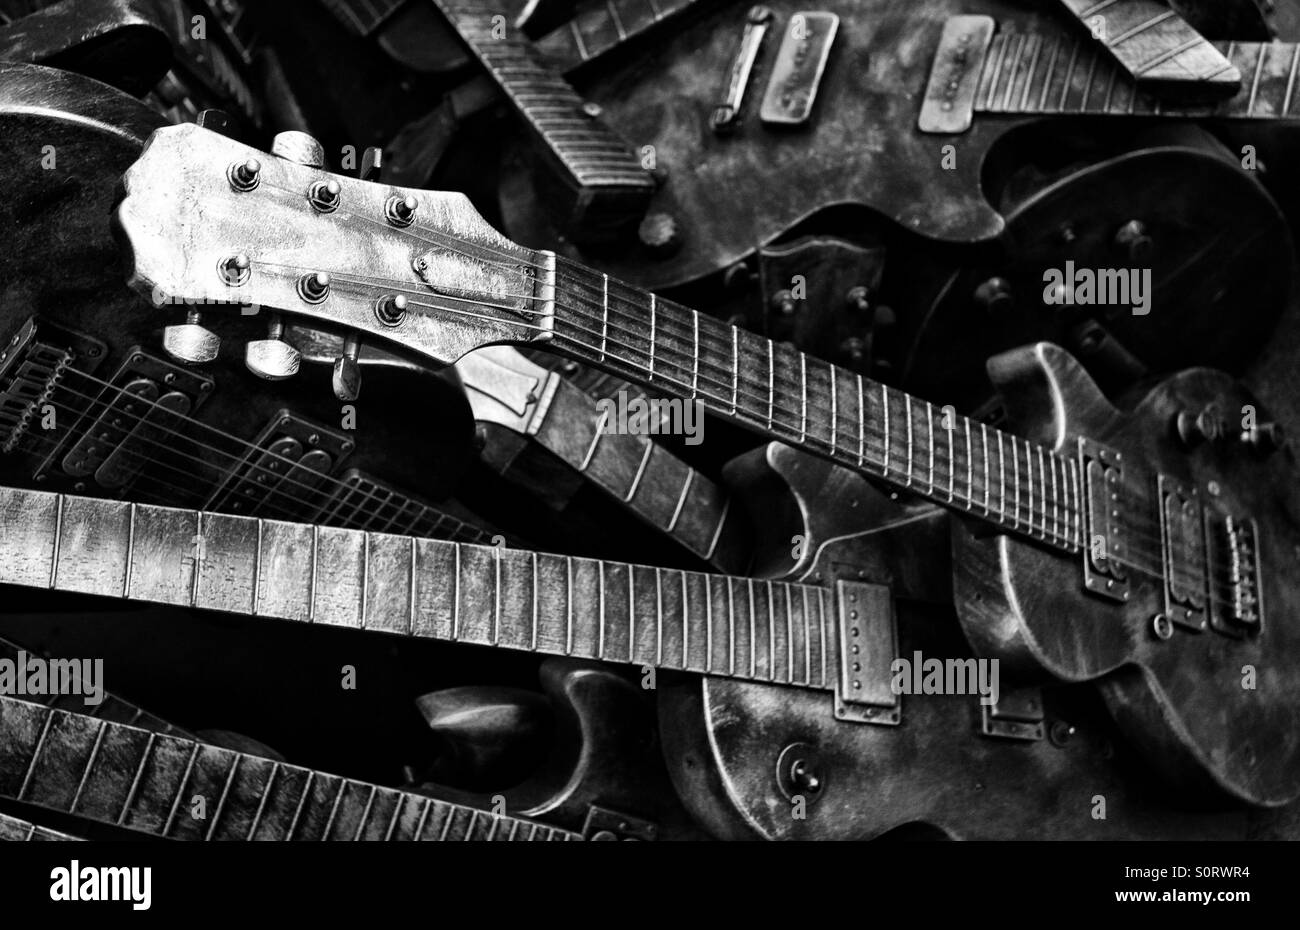 Une pile de guitares métalliques non utilisés avec un noir et blanc, la teinte monochrome. Banque D'Images